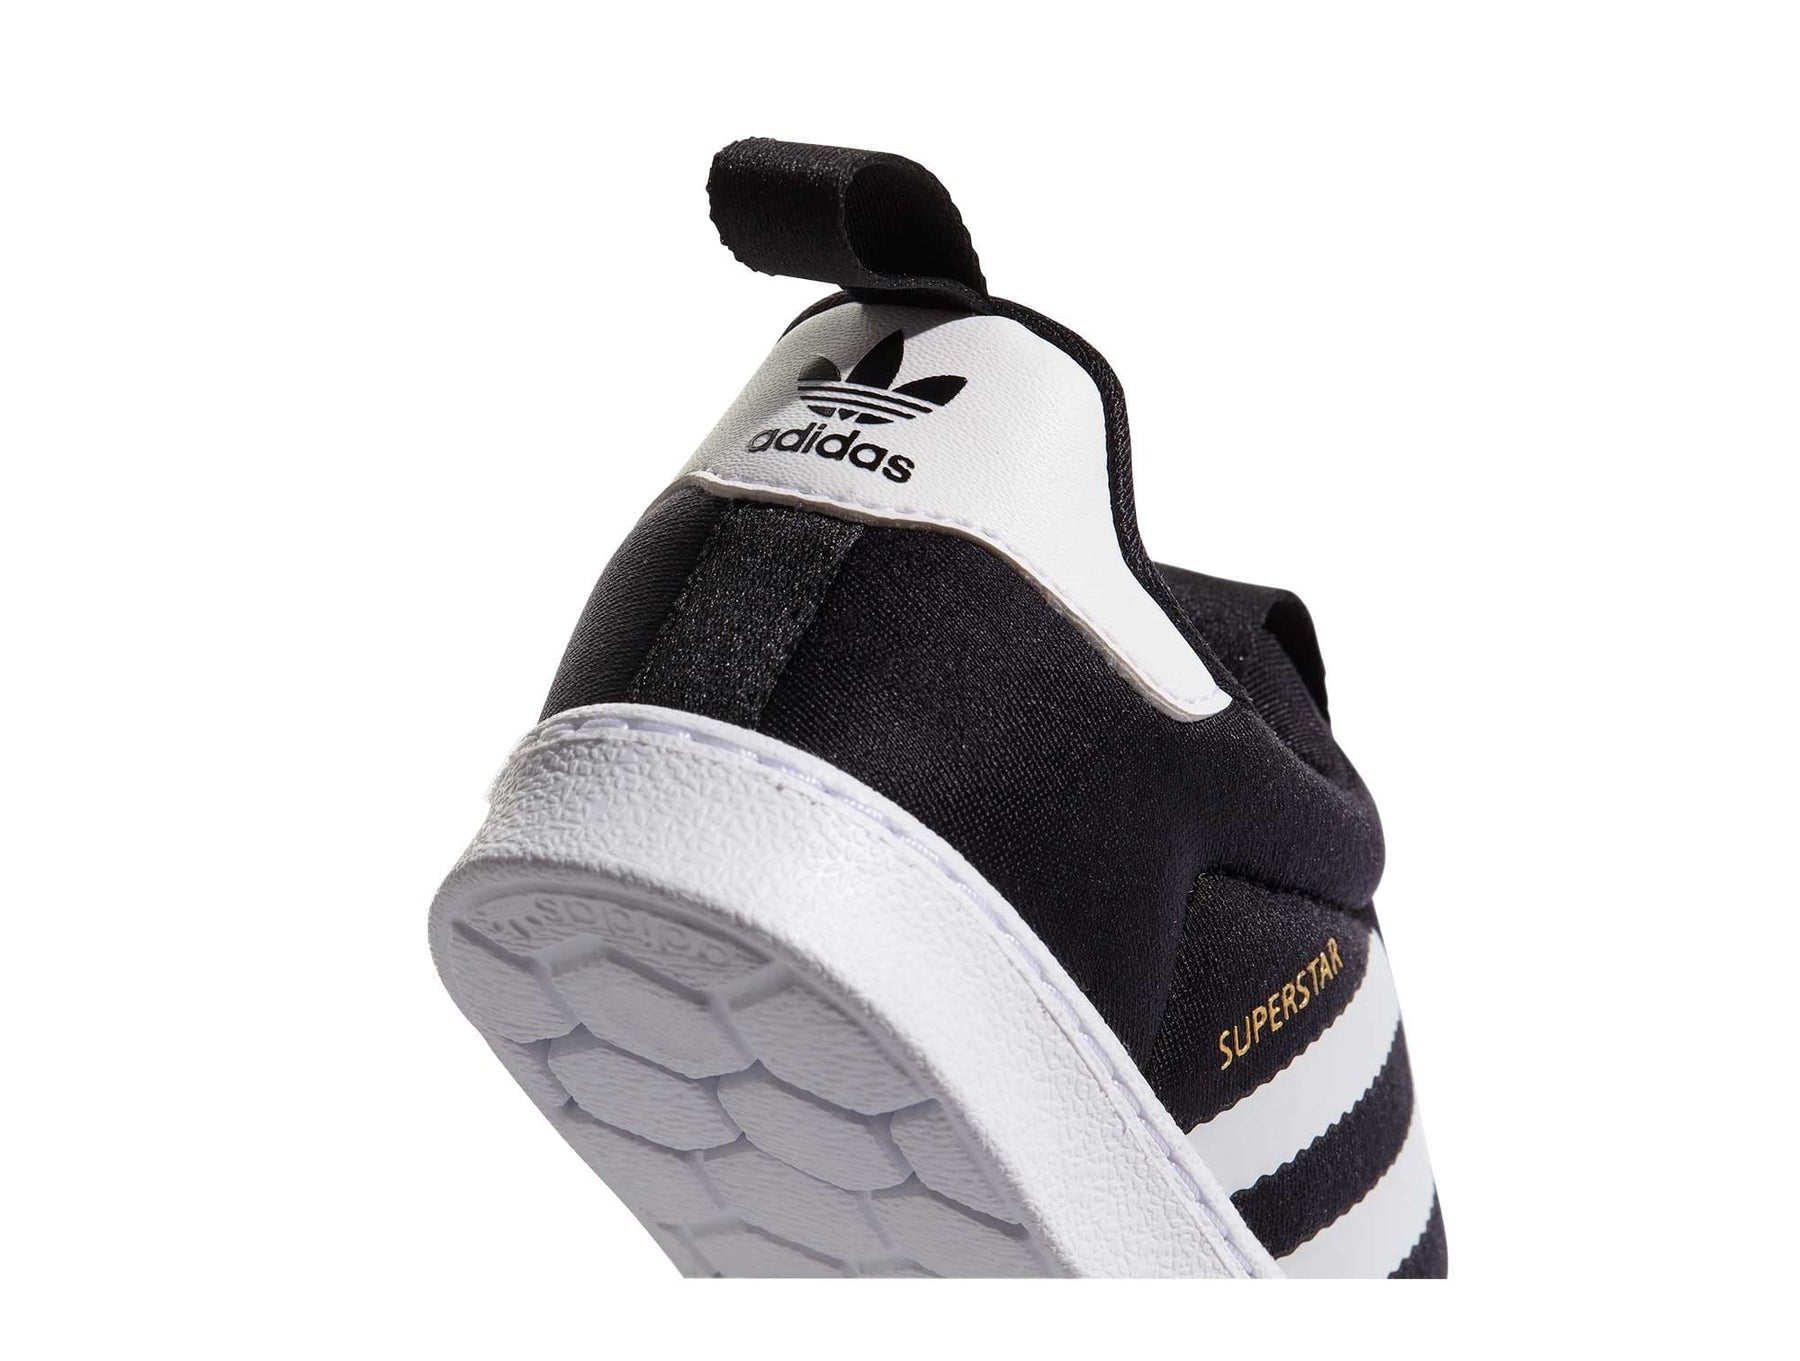 Zapatilla niño velcro Adidas Supertart